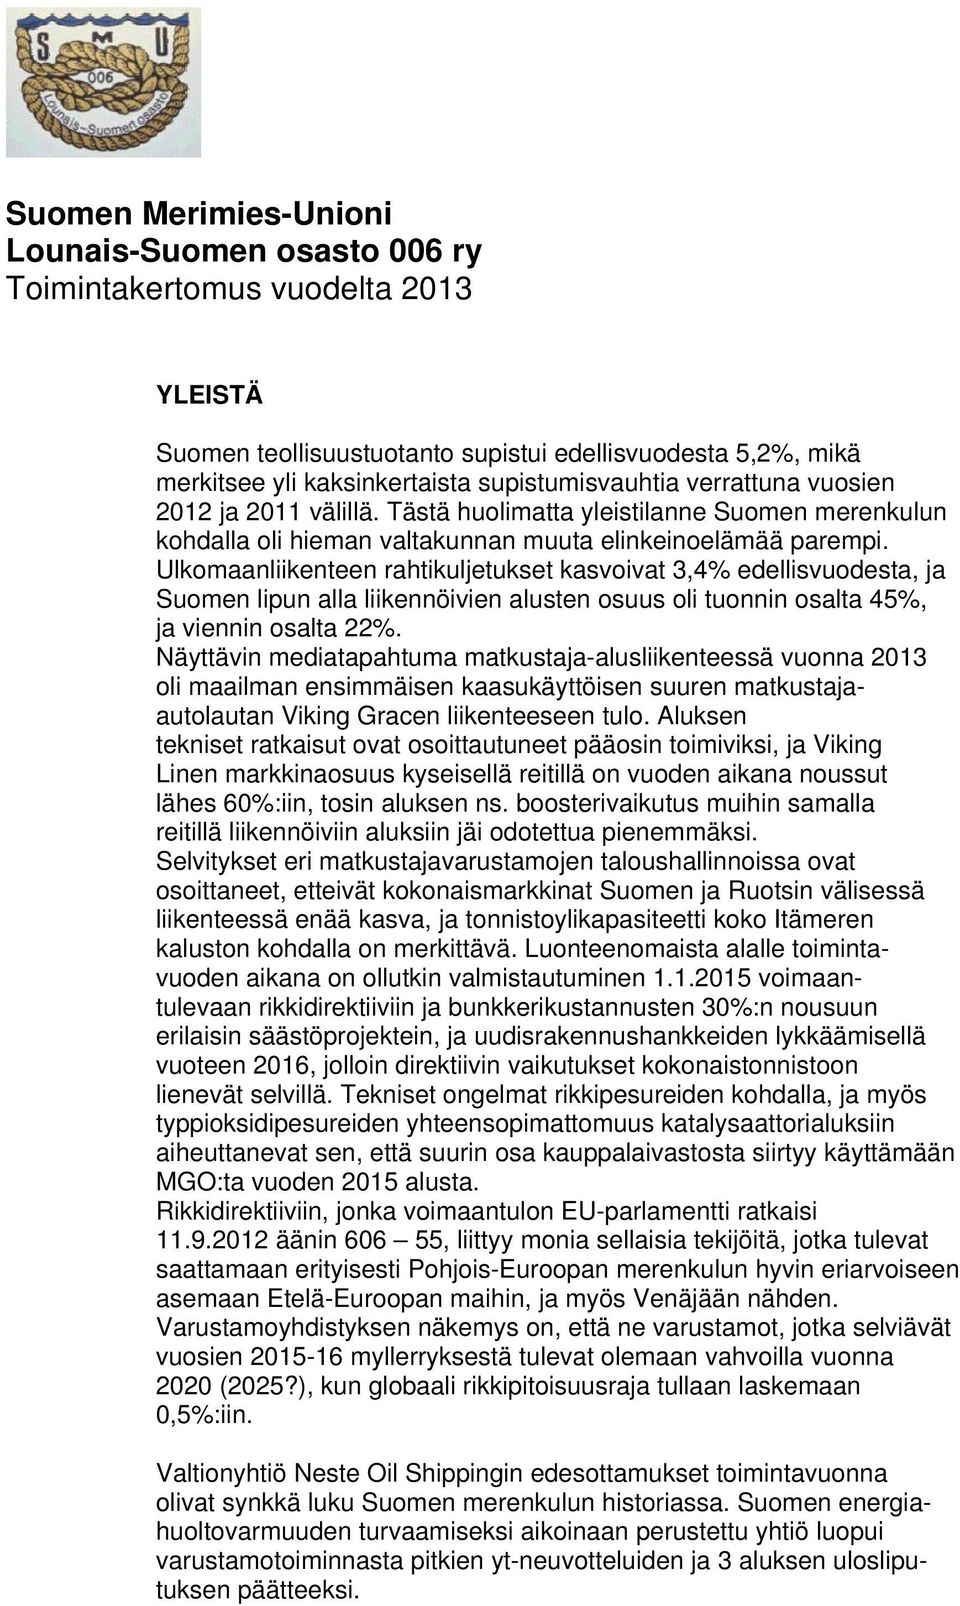 Ulkomaanliikenteen rahtikuljetukset kasvoivat 3,4% edellisvuodesta, ja Suomen lipun alla liikennöivien alusten osuus oli tuonnin osalta 45%, ja viennin osalta 22%.